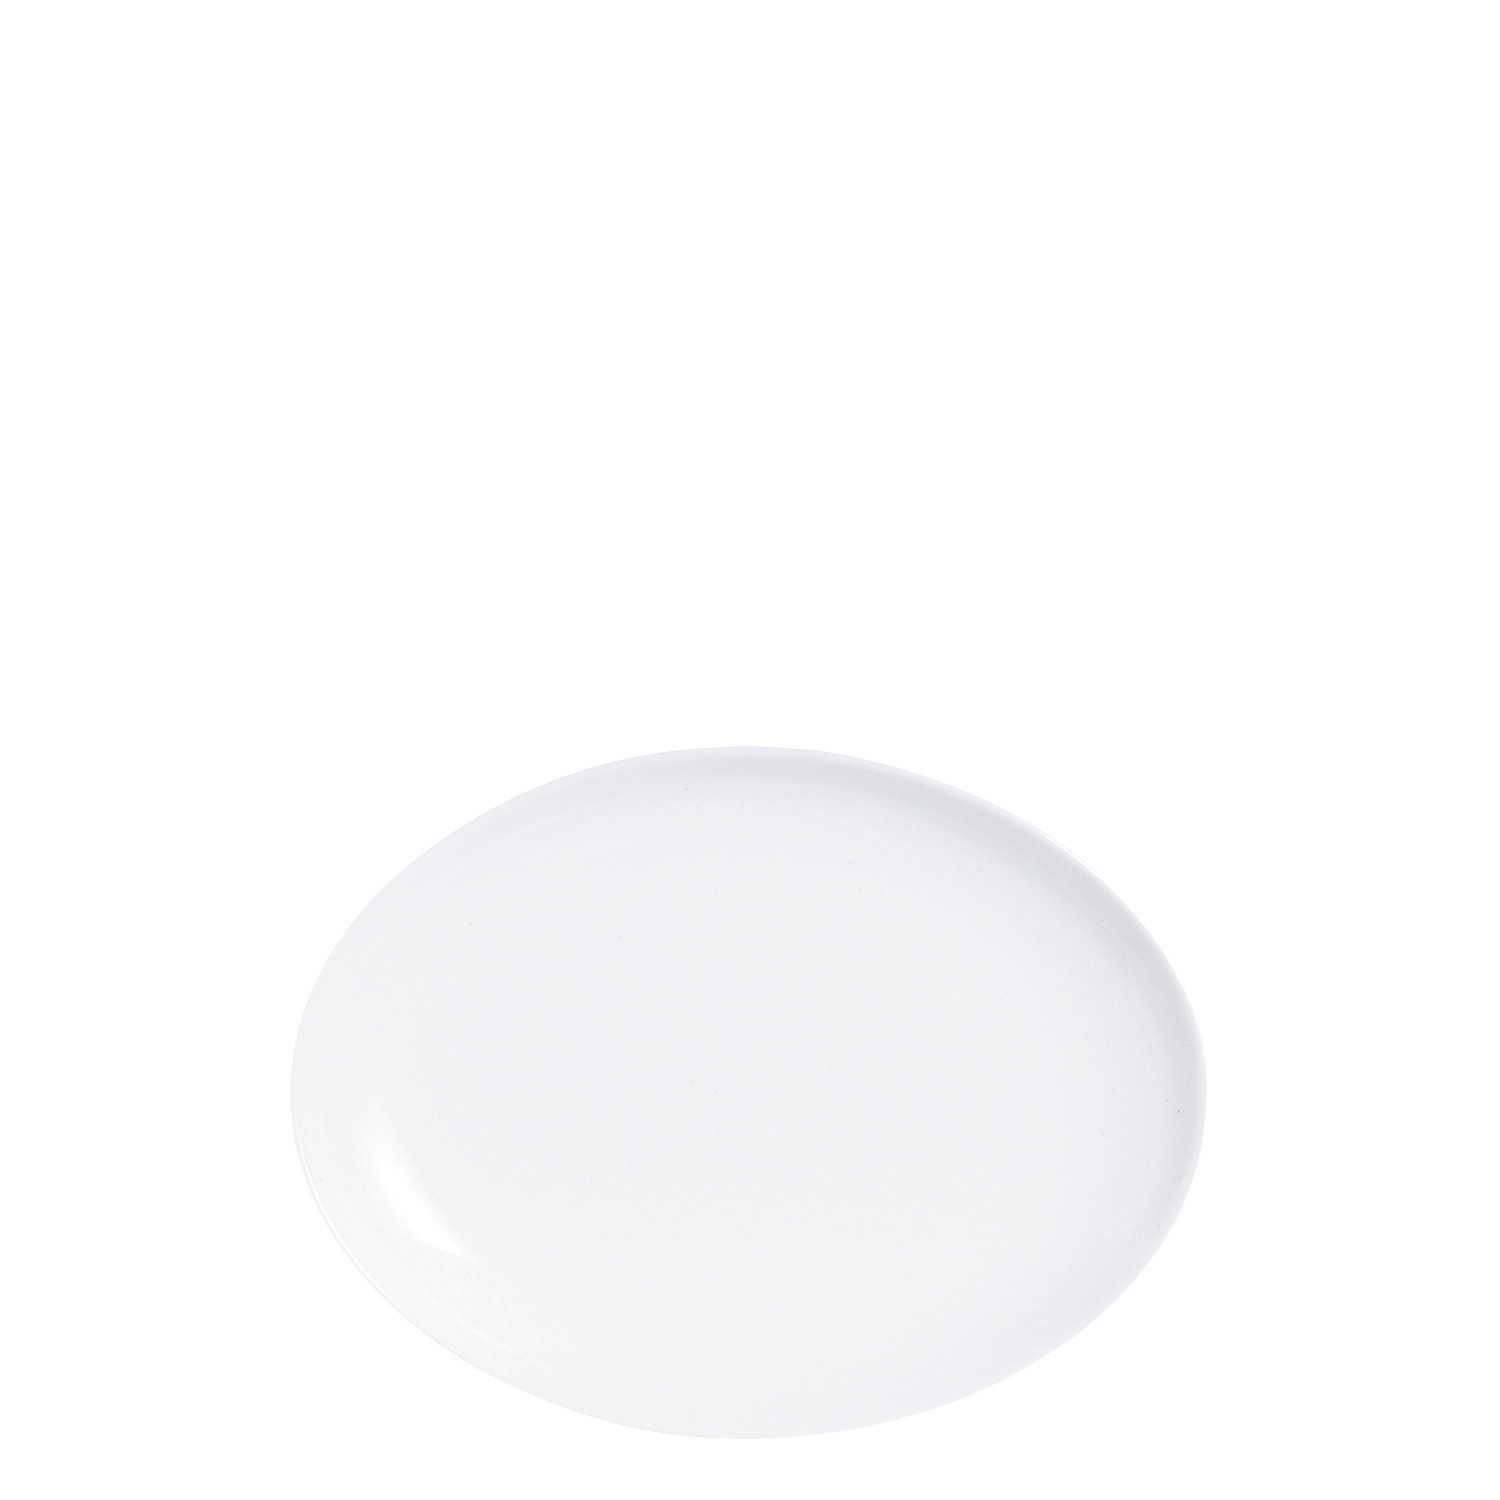 Platte oval 330 x 250 mm uni weiß